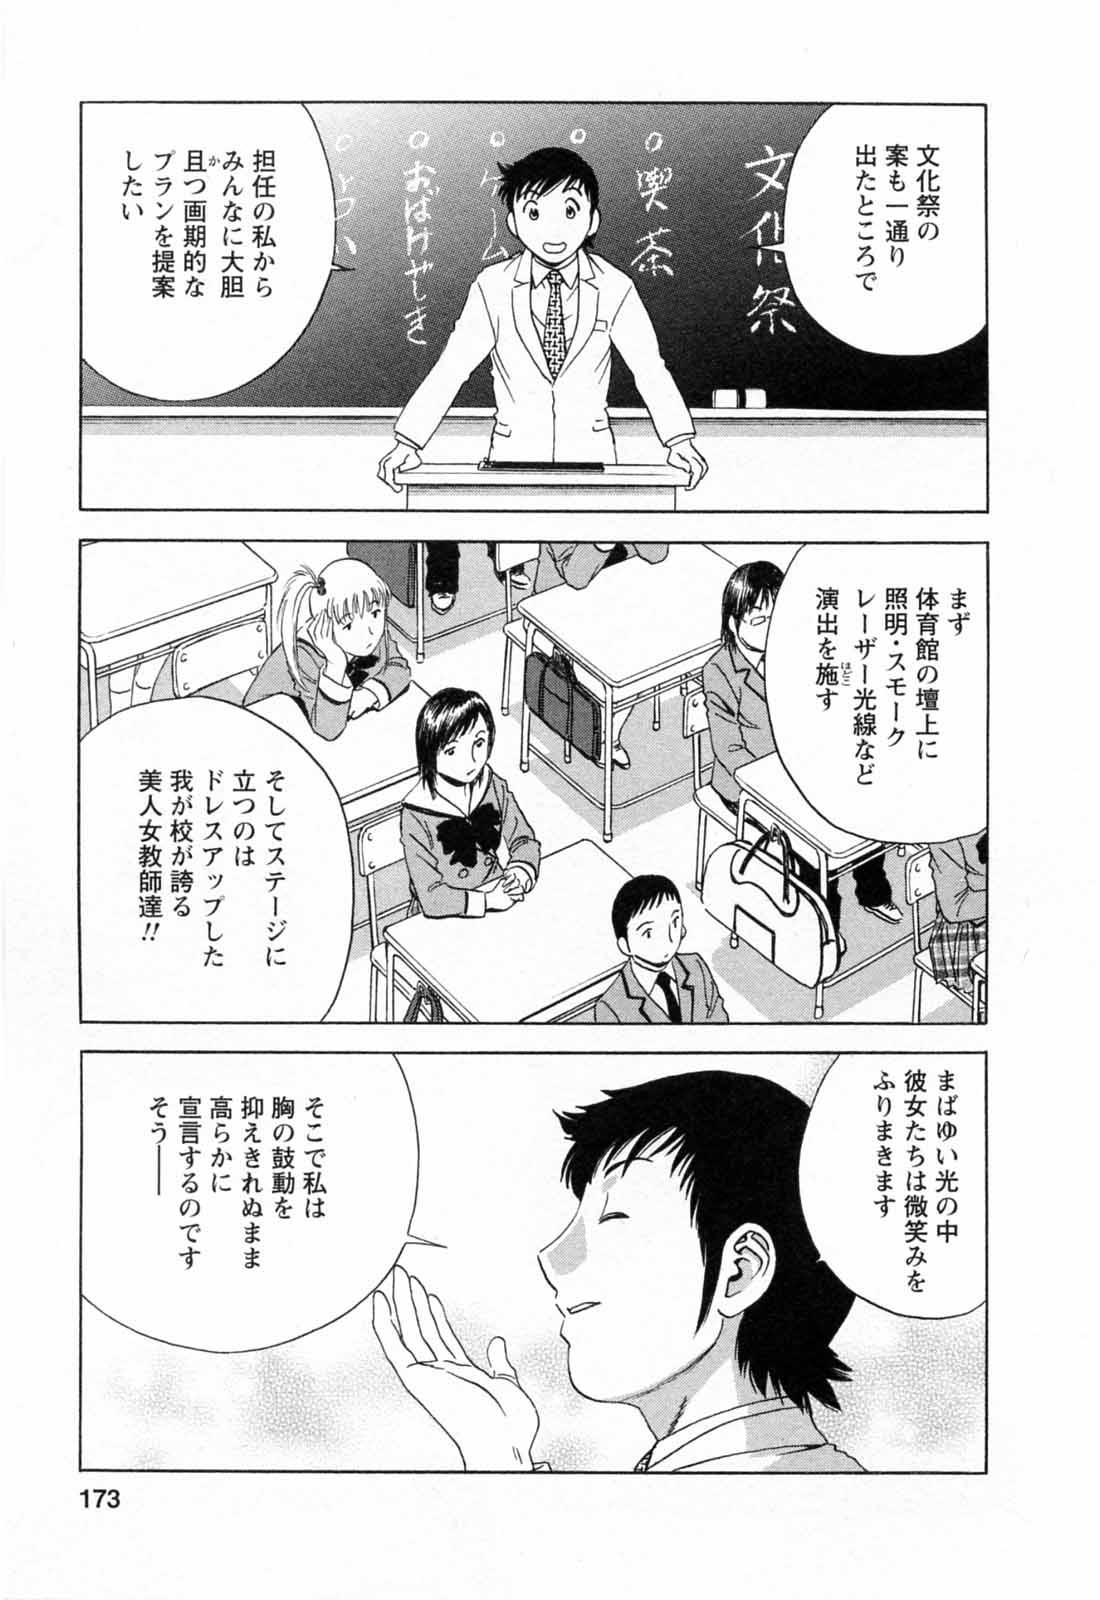 [Hidemaru] Mo-Retsu! Boin Sensei (Boing Boing Teacher) Vol.5 174